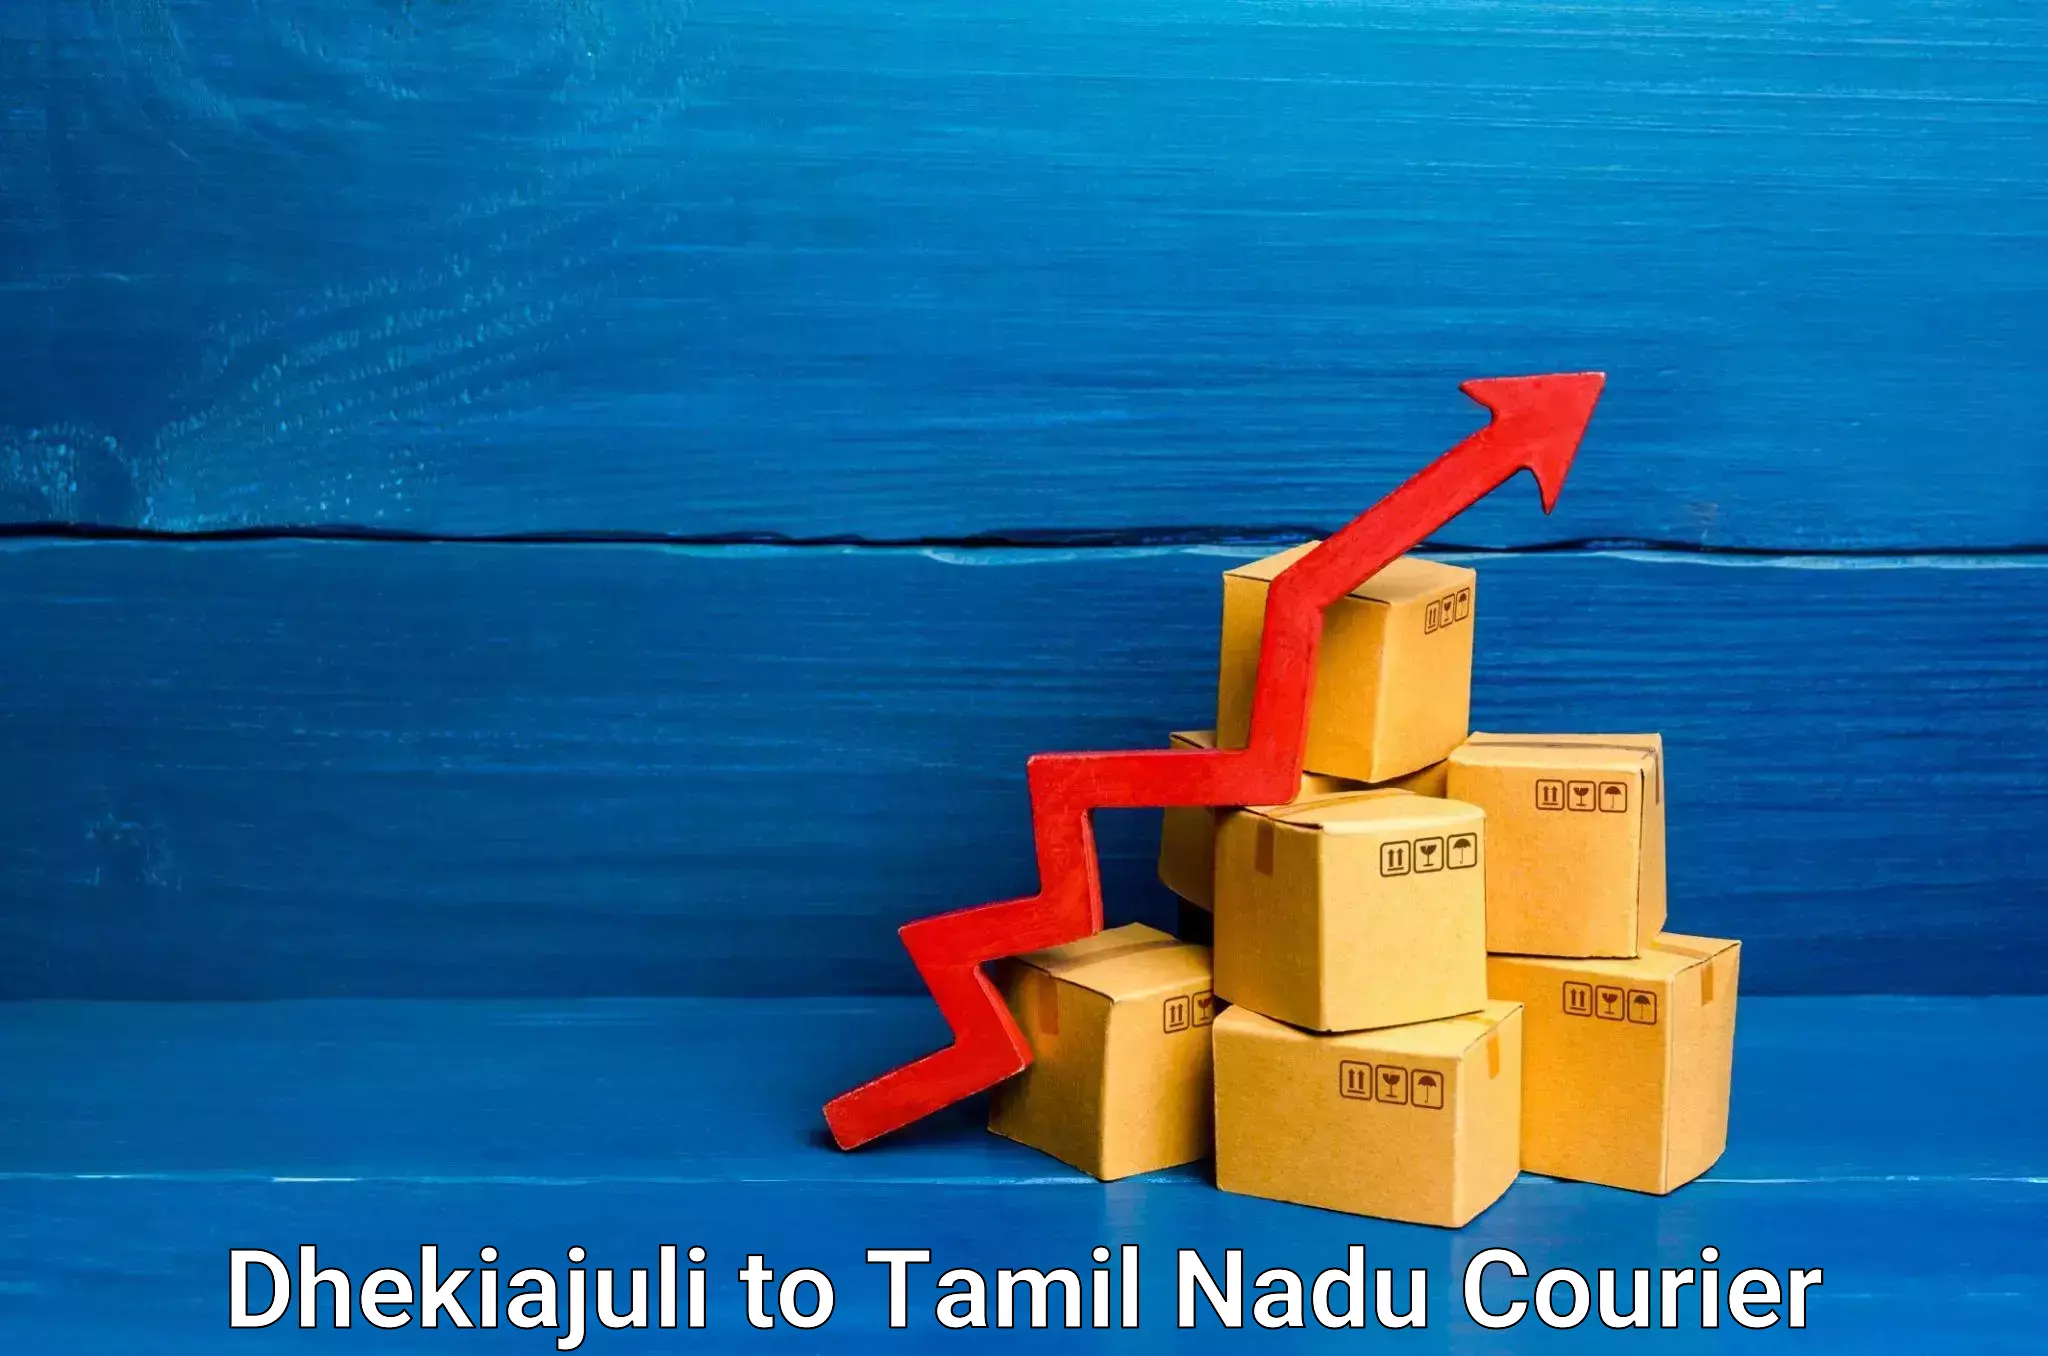 Customizable delivery plans Dhekiajuli to Anna University Chennai